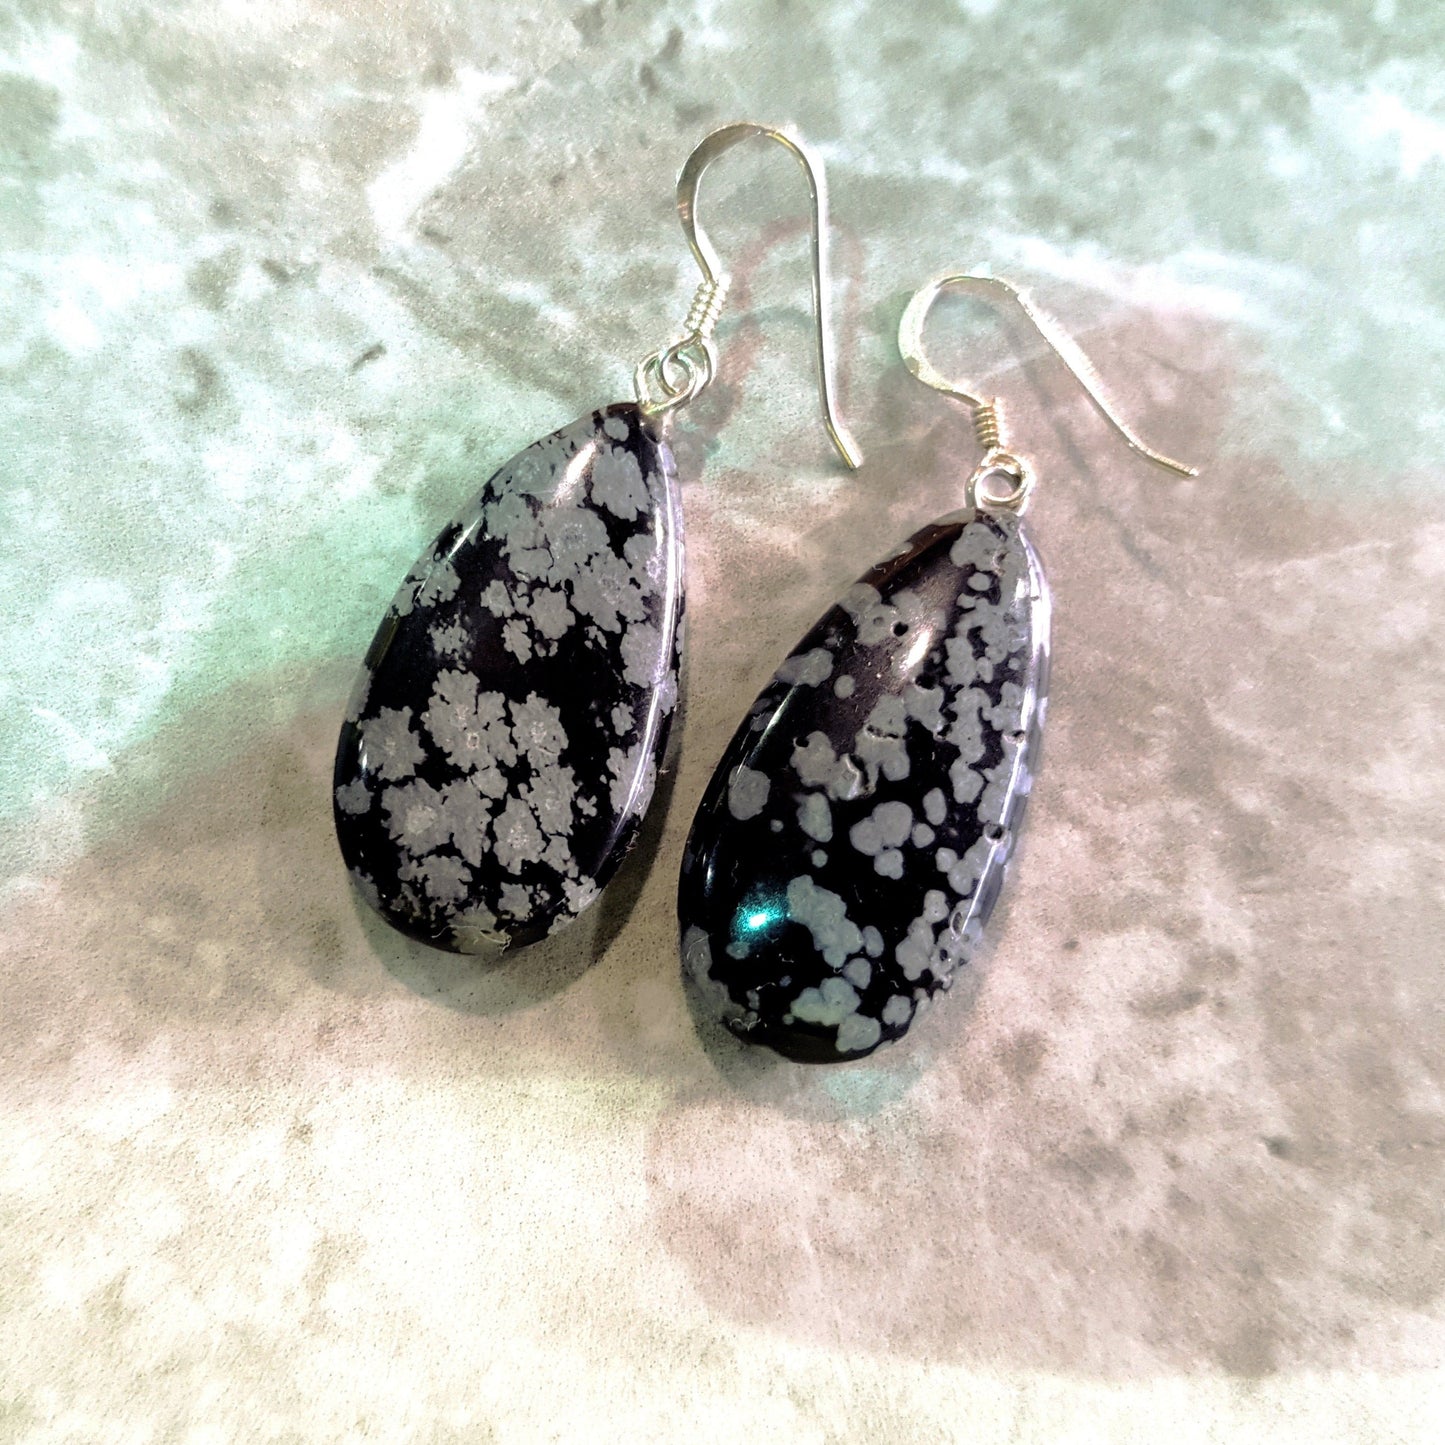 Snowflake Obsidian Earrings, Teardrop Sterling Silver Earrings, Gemstone Earrings | by nlanlaVictory-5